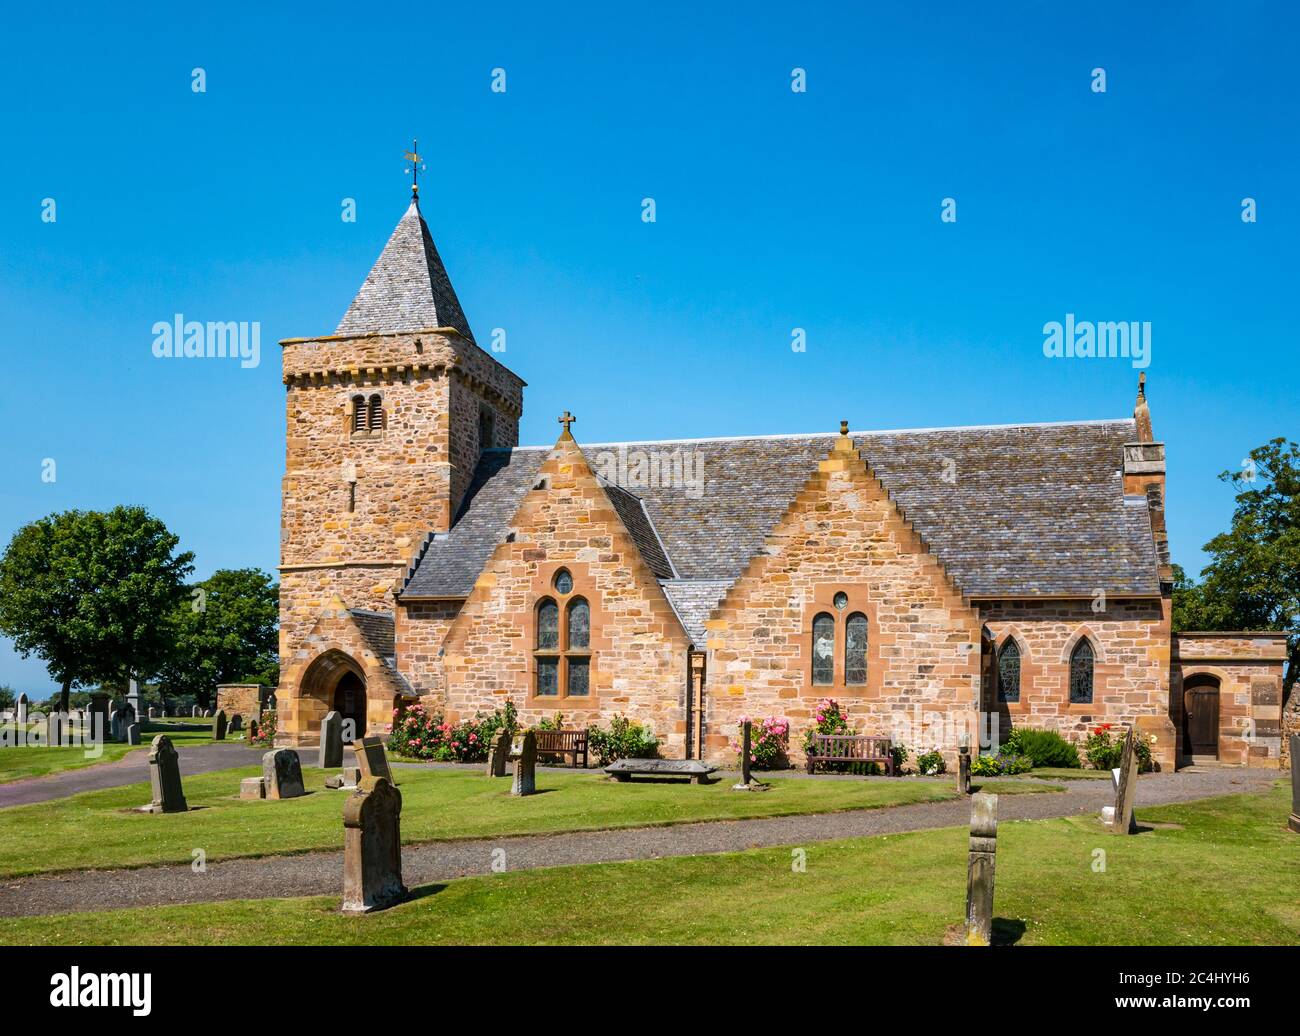 Aberlady Pfarrkirche mit alten Grabsteinen auf dem Kirchhof am sonnigen Sommertag, East Lothian, Schottland, Großbritannien Stockfoto